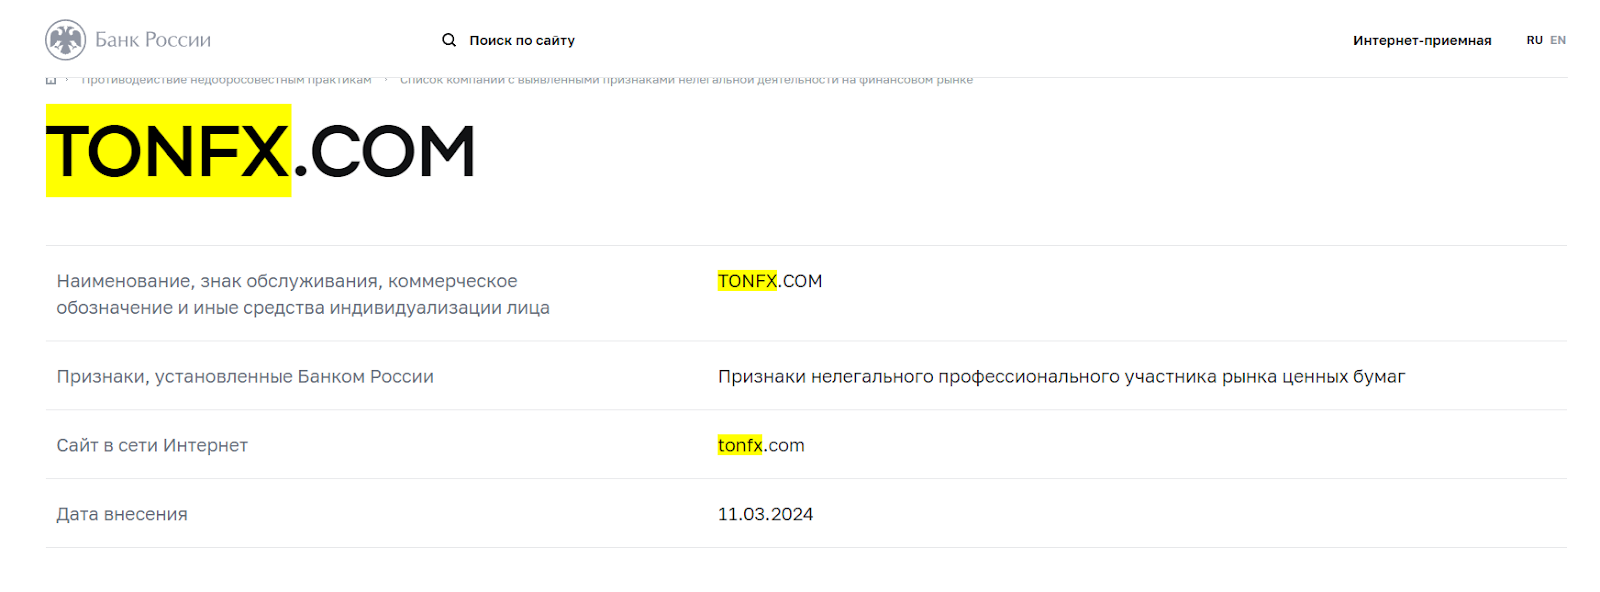 Tonfx.com отзывы